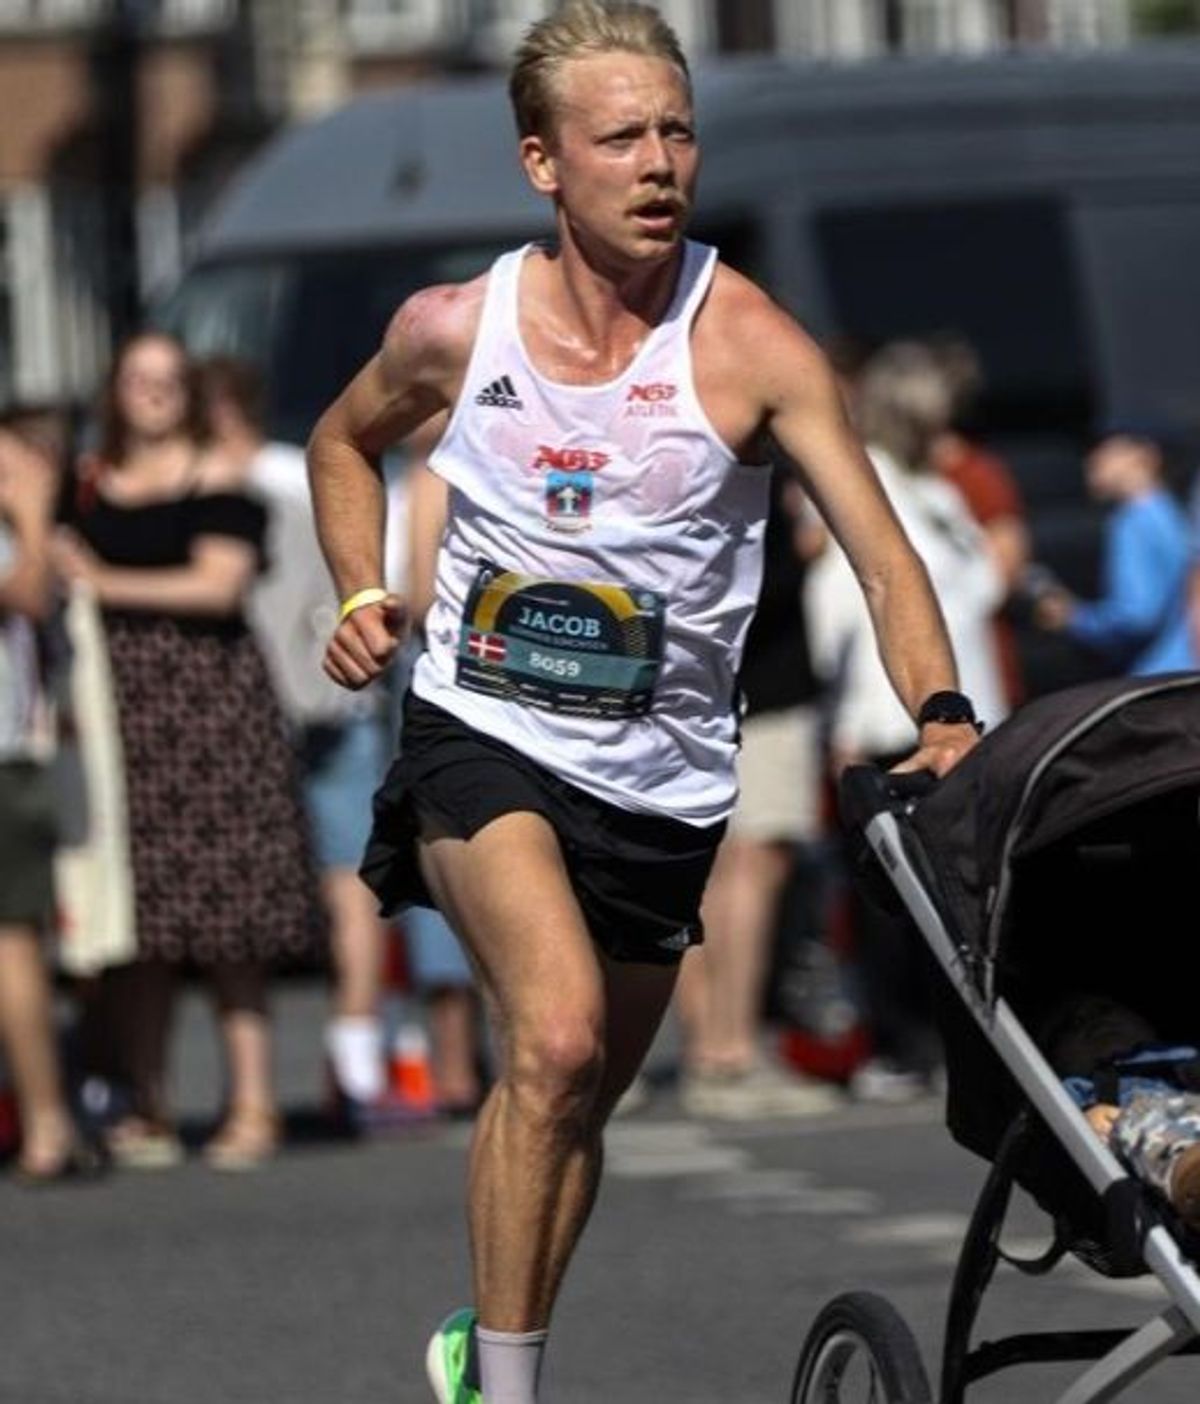 Un padre no tiene con quién dejar a su hijo y bate un récord de media maratón empujando el carrito del bebé